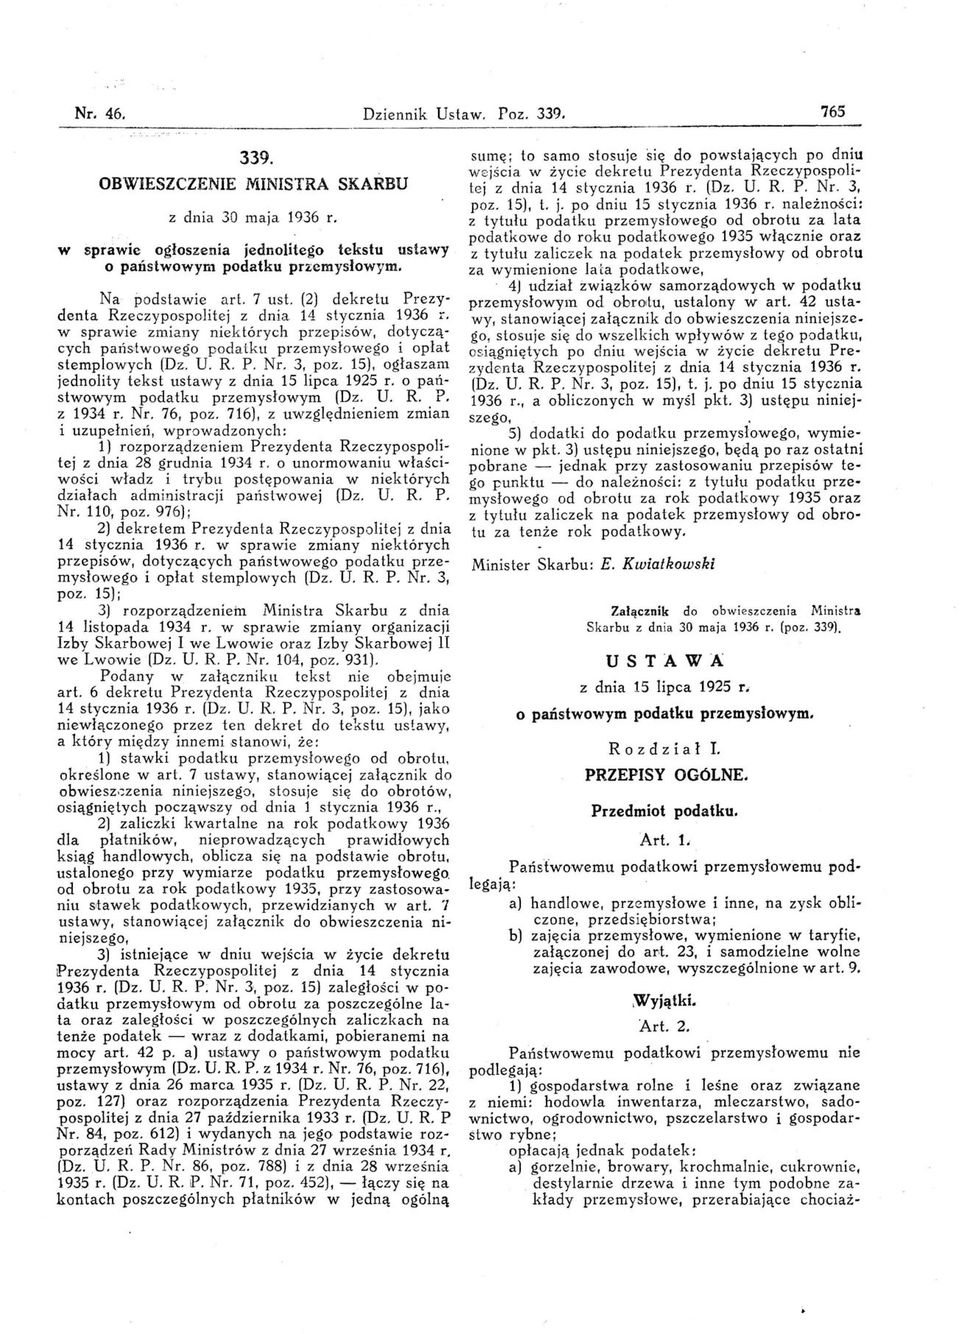 3, poz. 15), ogłaszam jednolity tekst ustawy z dnia 15 lipca 1925 r. o państwowym podatku przemysłowym (Dz. U. R. P. z 1934 r. Nr. 76, poz. 716).